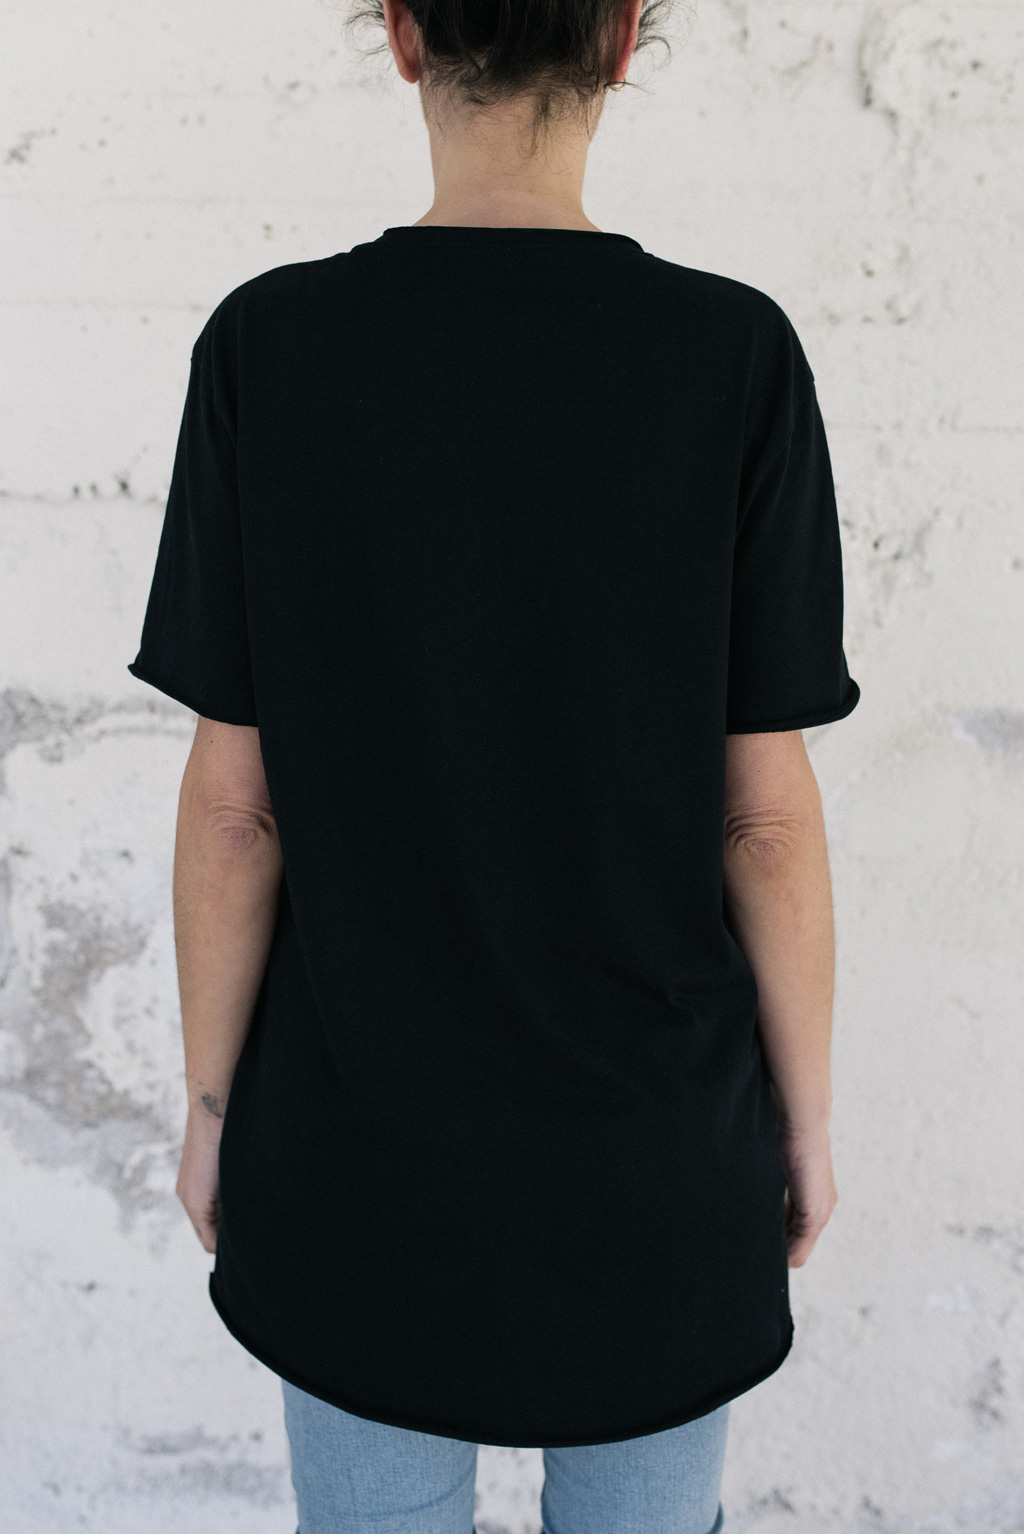 Camiseta negra unisex. Moda orgánica y gallega